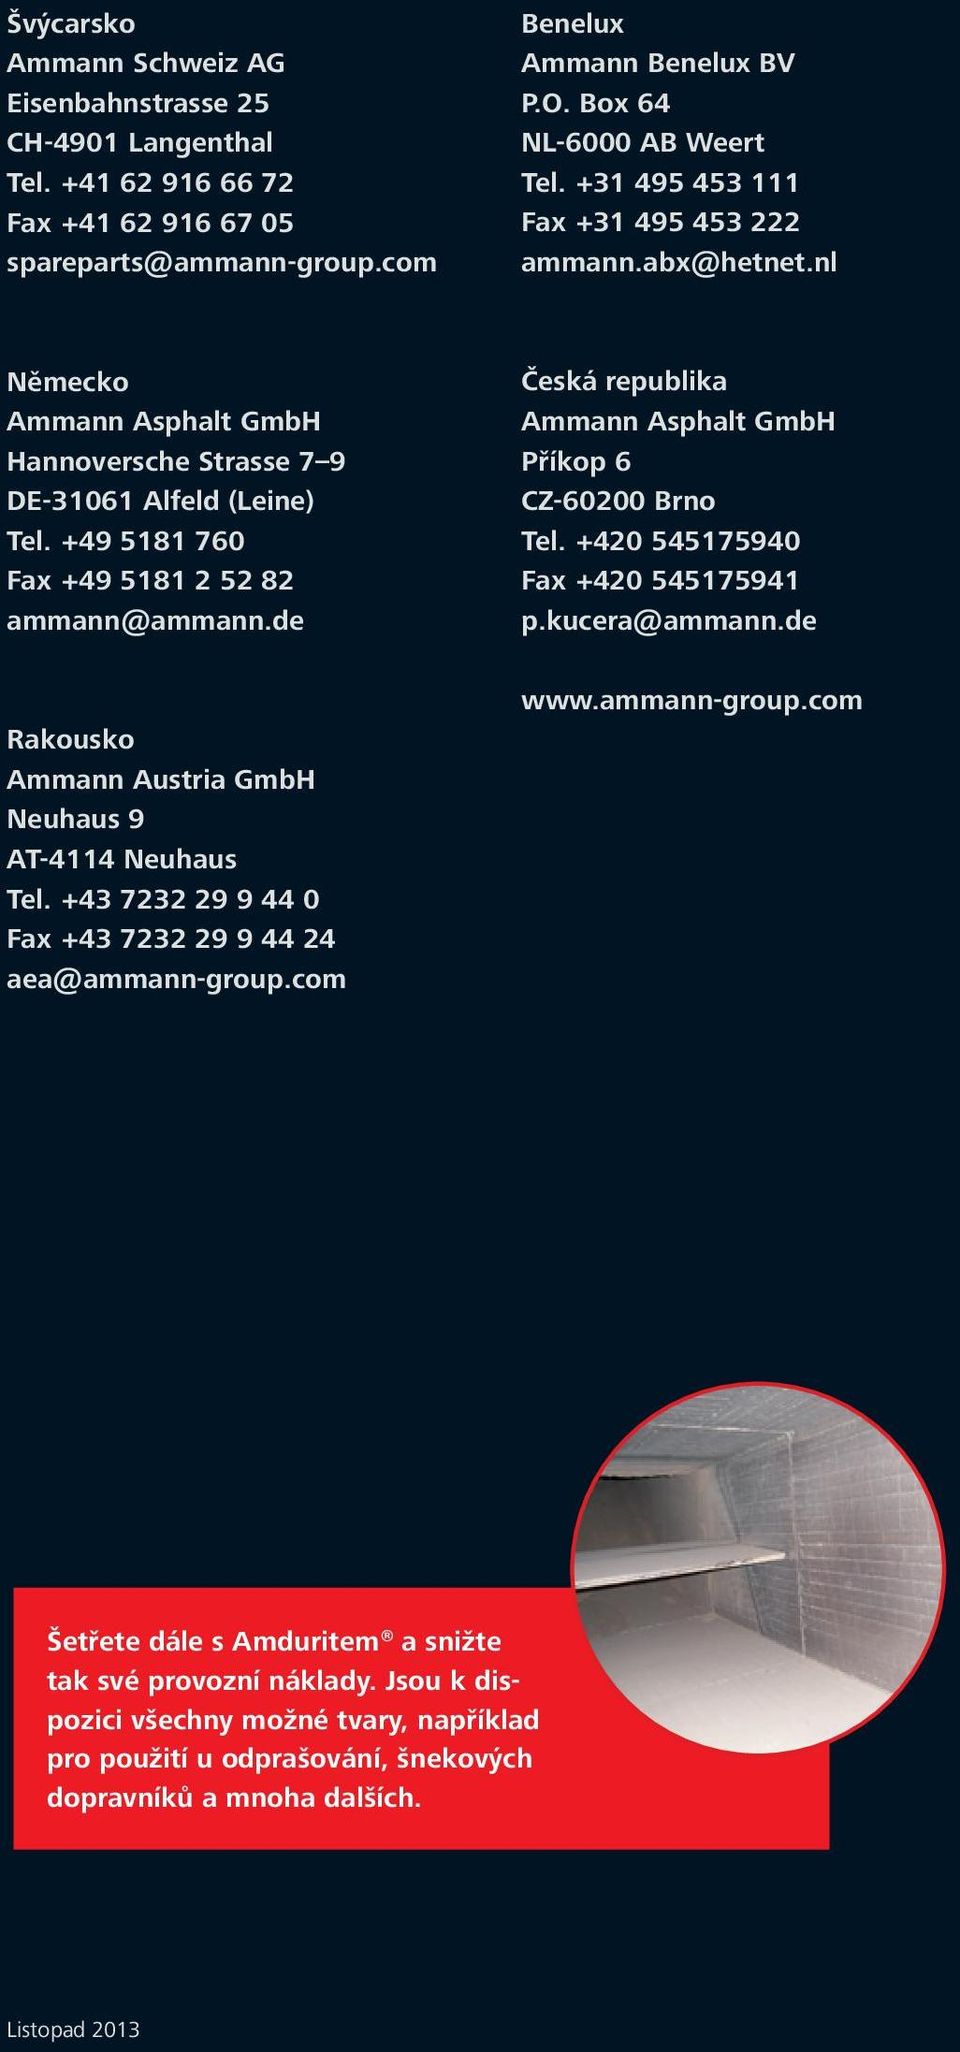 de Rakousko Ammann Austria GmbH Neuhaus 9 AT-4114 Neuhaus Tel. +43 7232 29 9 44 0 Fax +43 7232 29 9 44 24 aea@ammann-group.com Česká republika Ammann Asphalt GmbH Příkop 6 CZ-60200 Brno Tel.